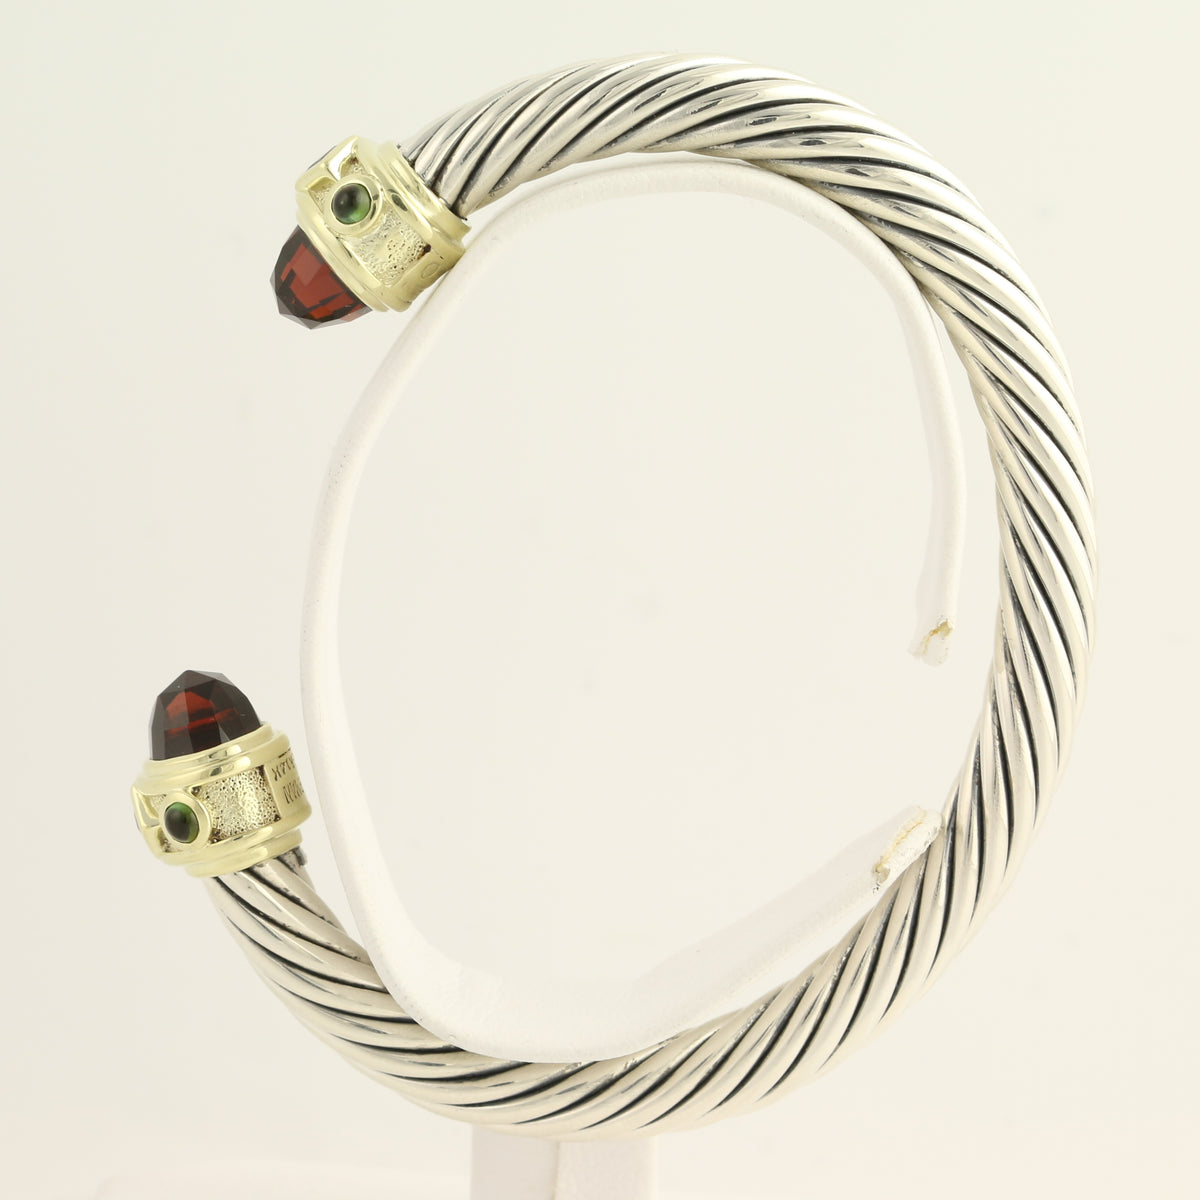 Yurman Multi-Gemstone Bracelet 6 1/2"